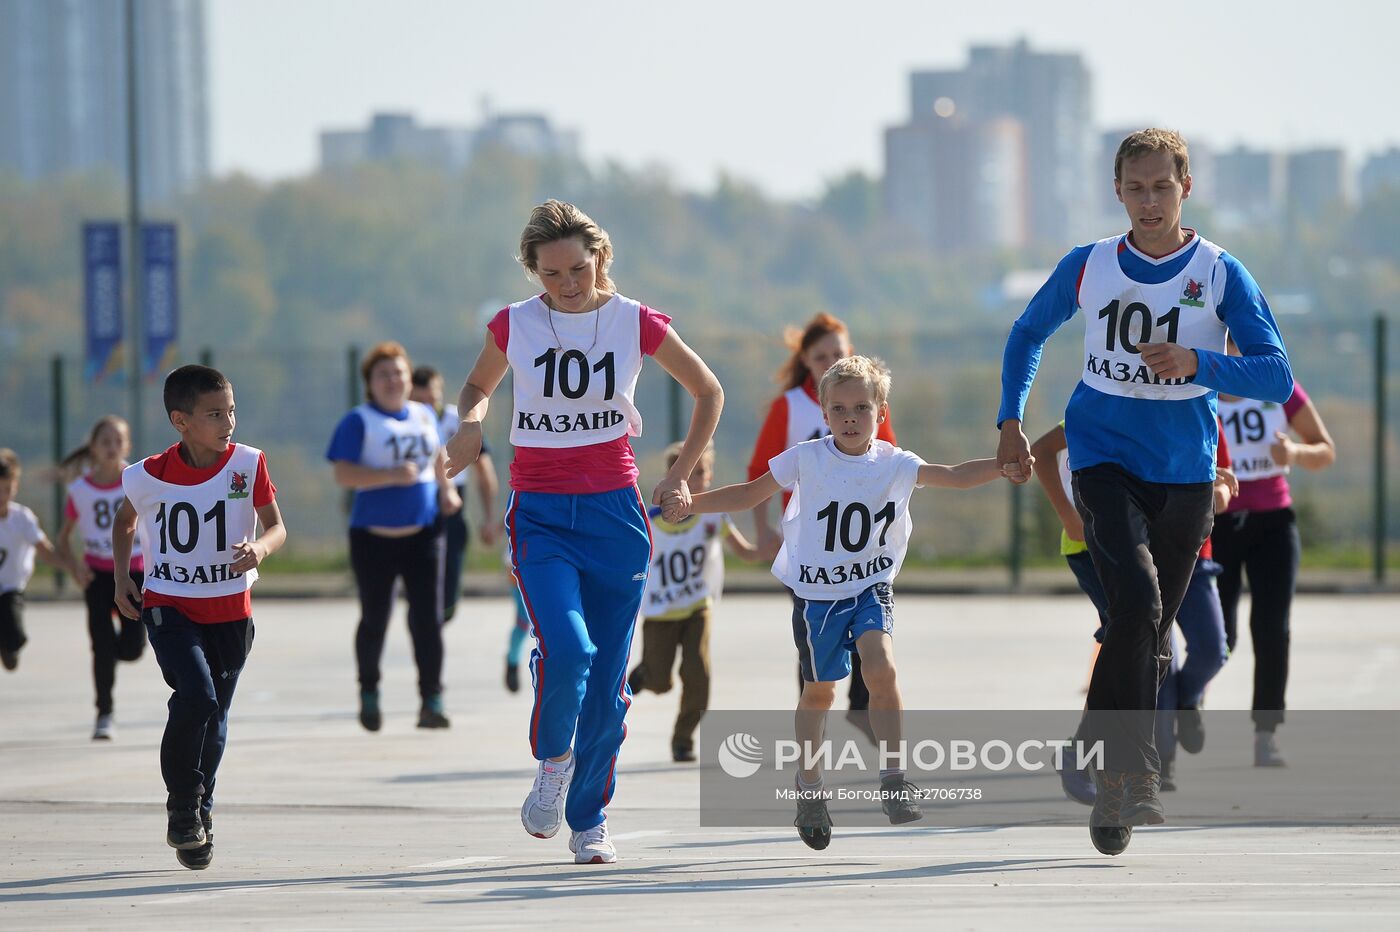 Всероссийский день бега "Кросс Нации - 2015"